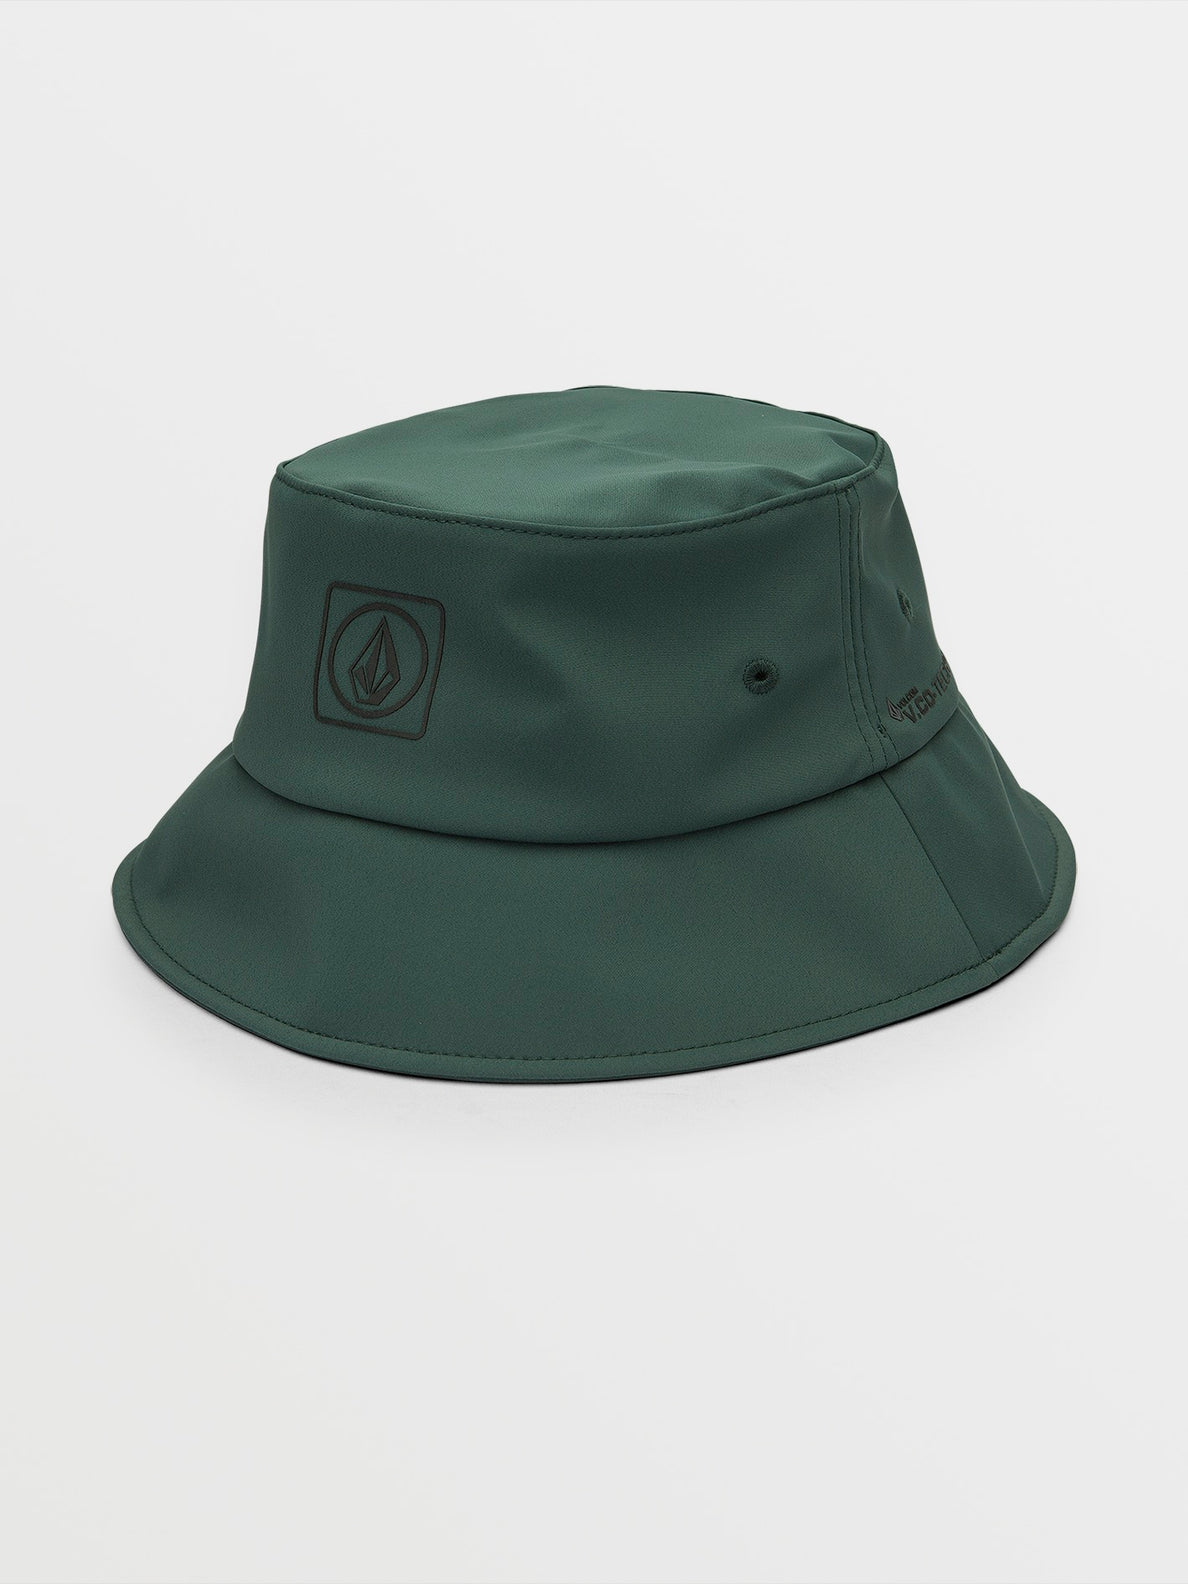 Stone Tech Bucket Hat - Fir Green